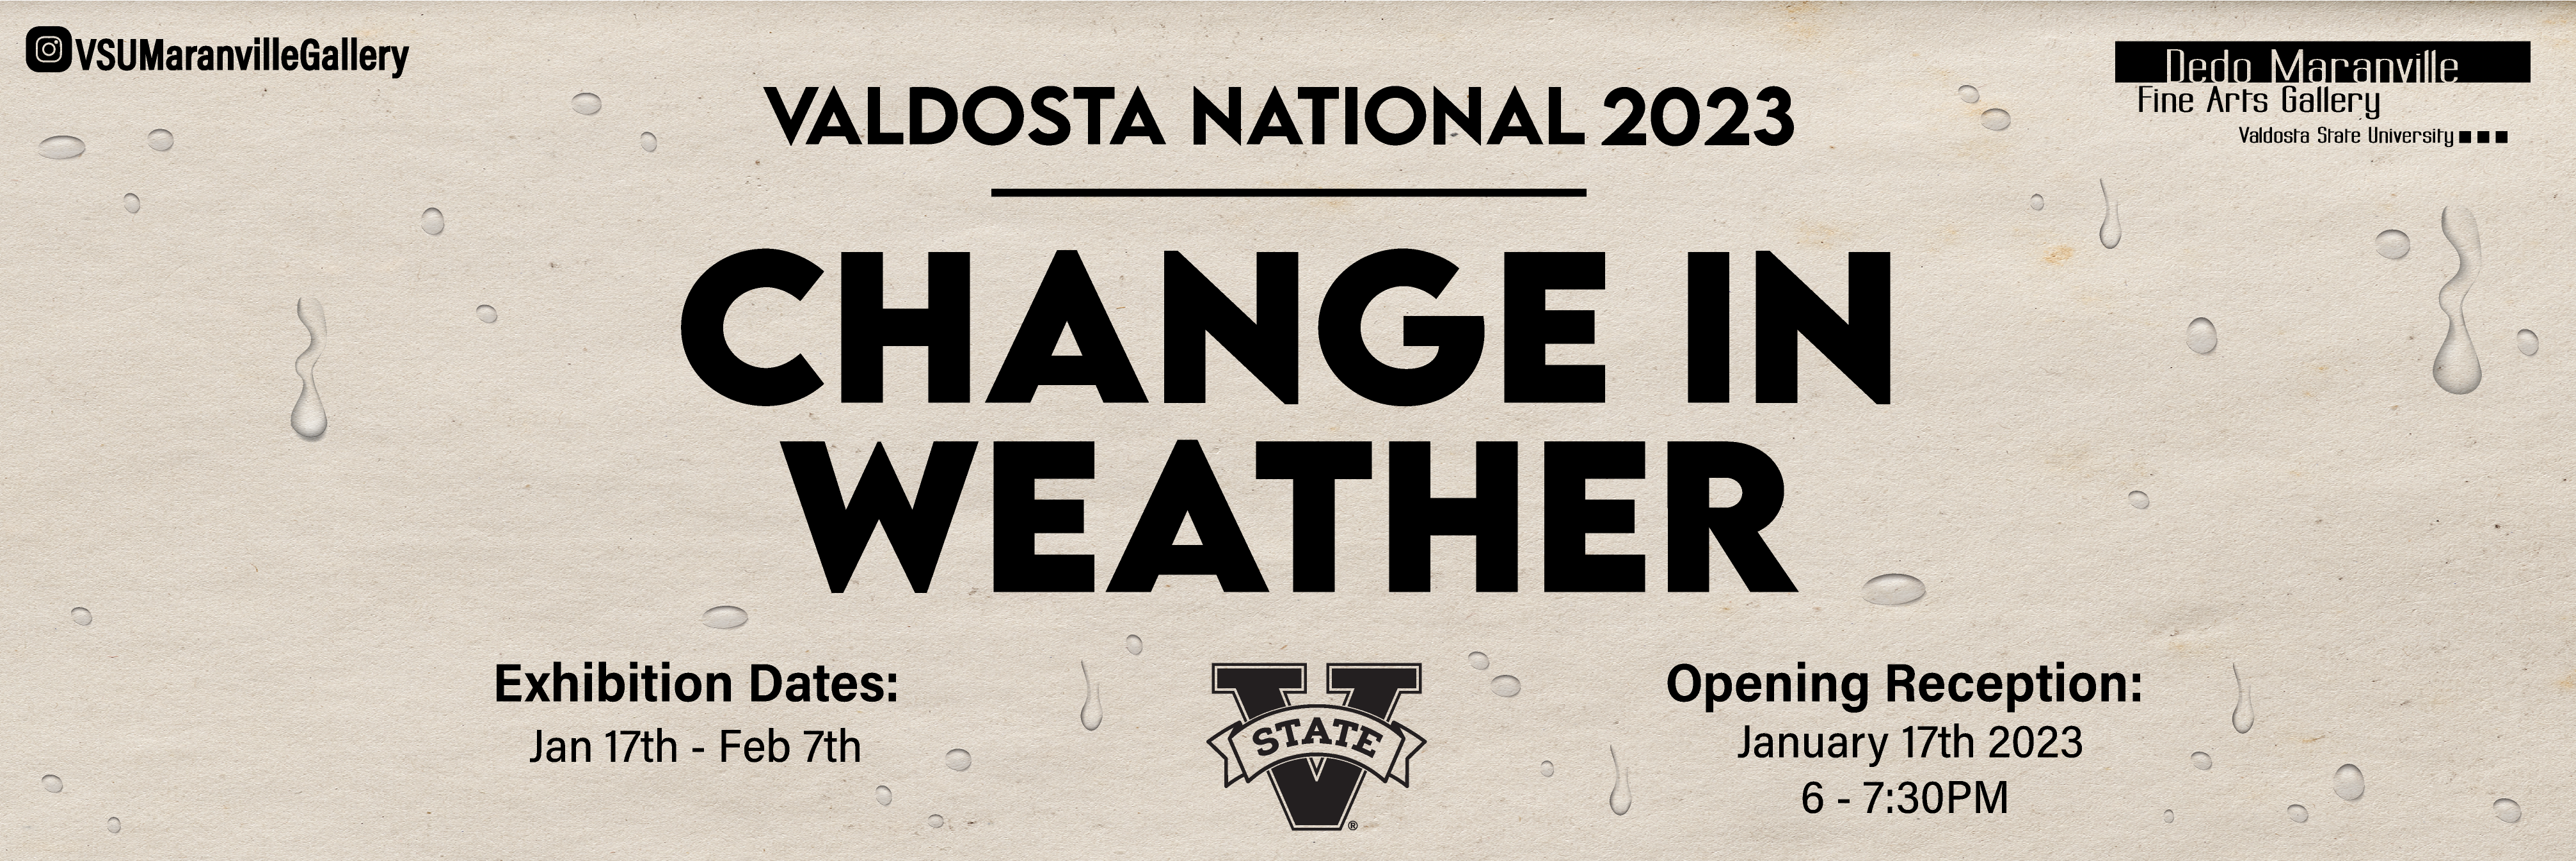 VALDOSTA NATIONAL 2023 | CHANGE IN WEATHER